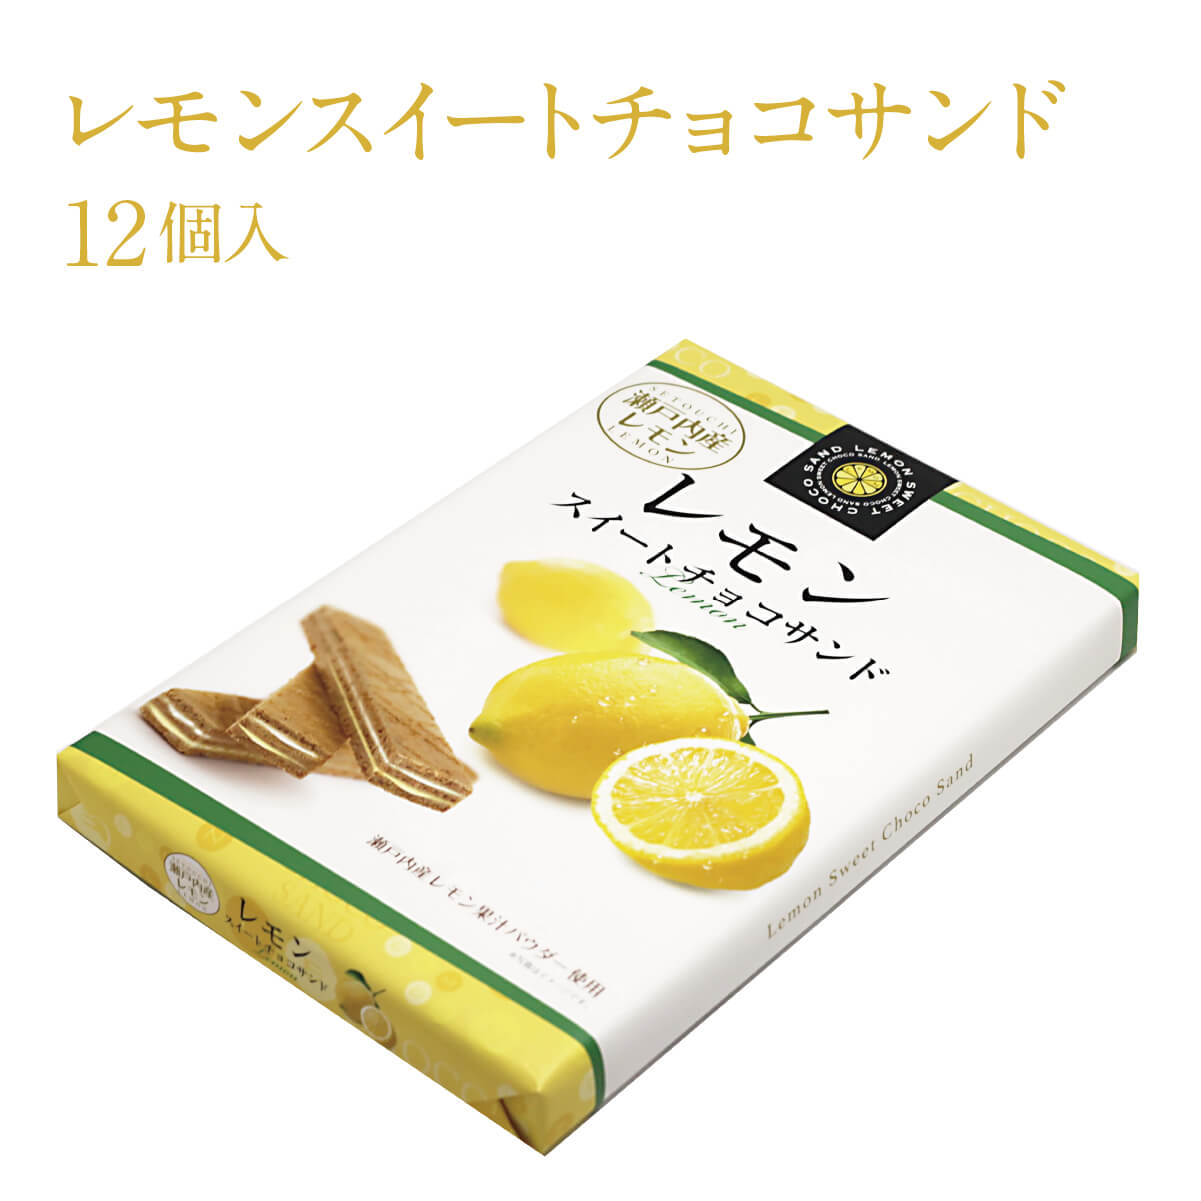 画像1: レモンスイートチョコサンド(12個入り)